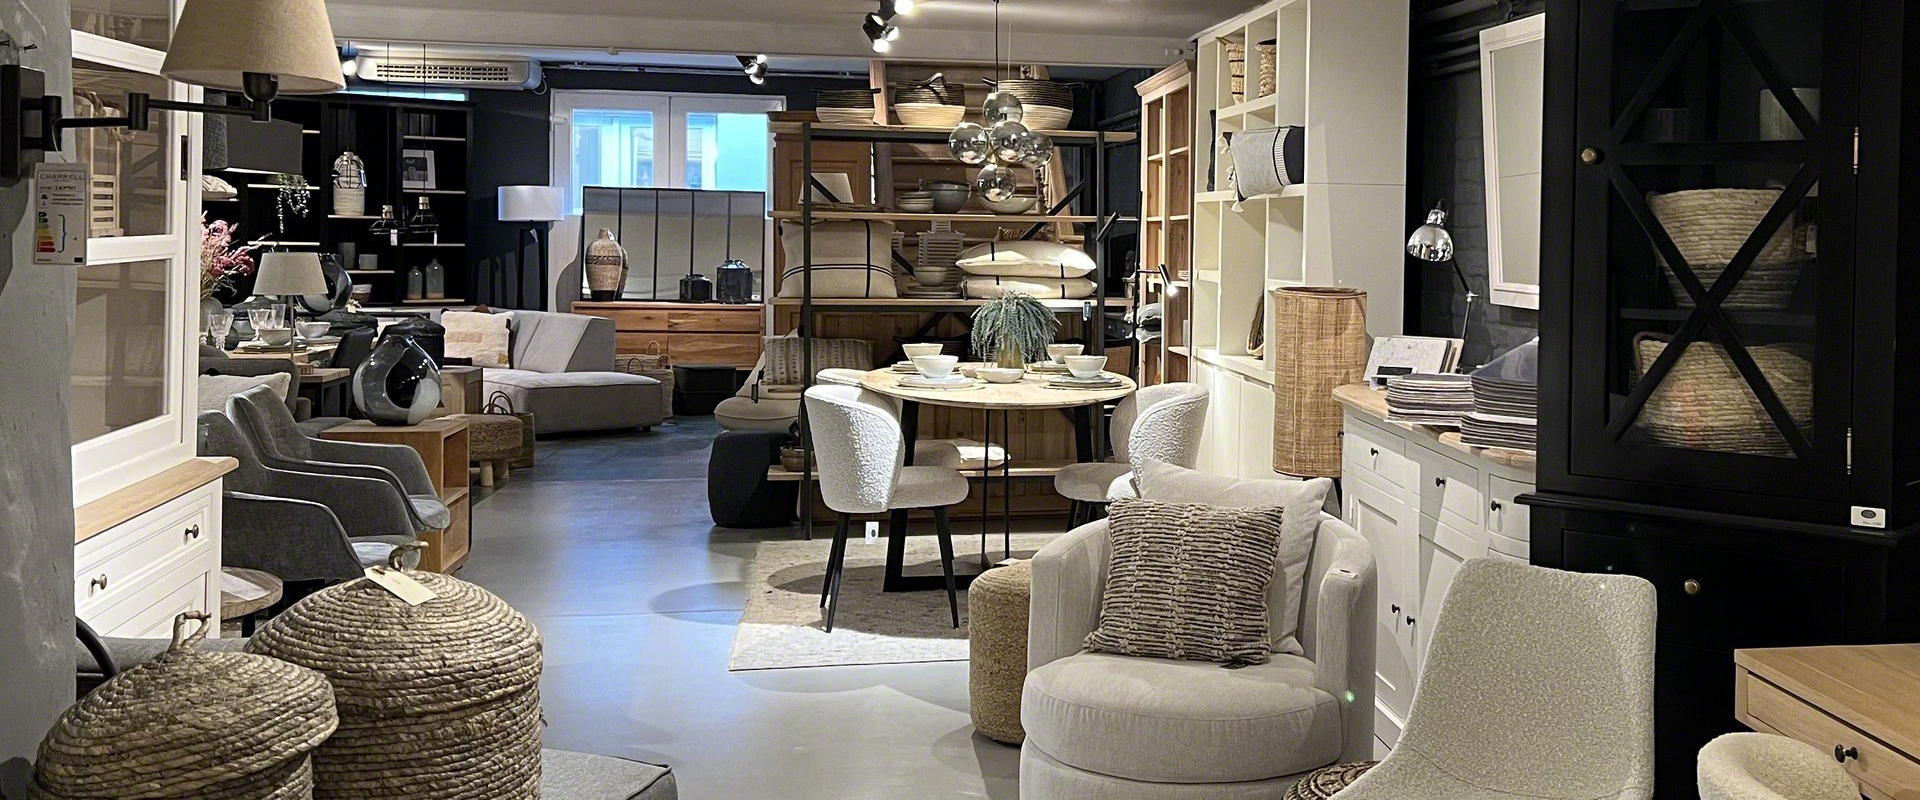 Showroom Wood Story Votre magasin atelier de montage de meubles sur mesure et achat sur place 1050 Bruxelles BE